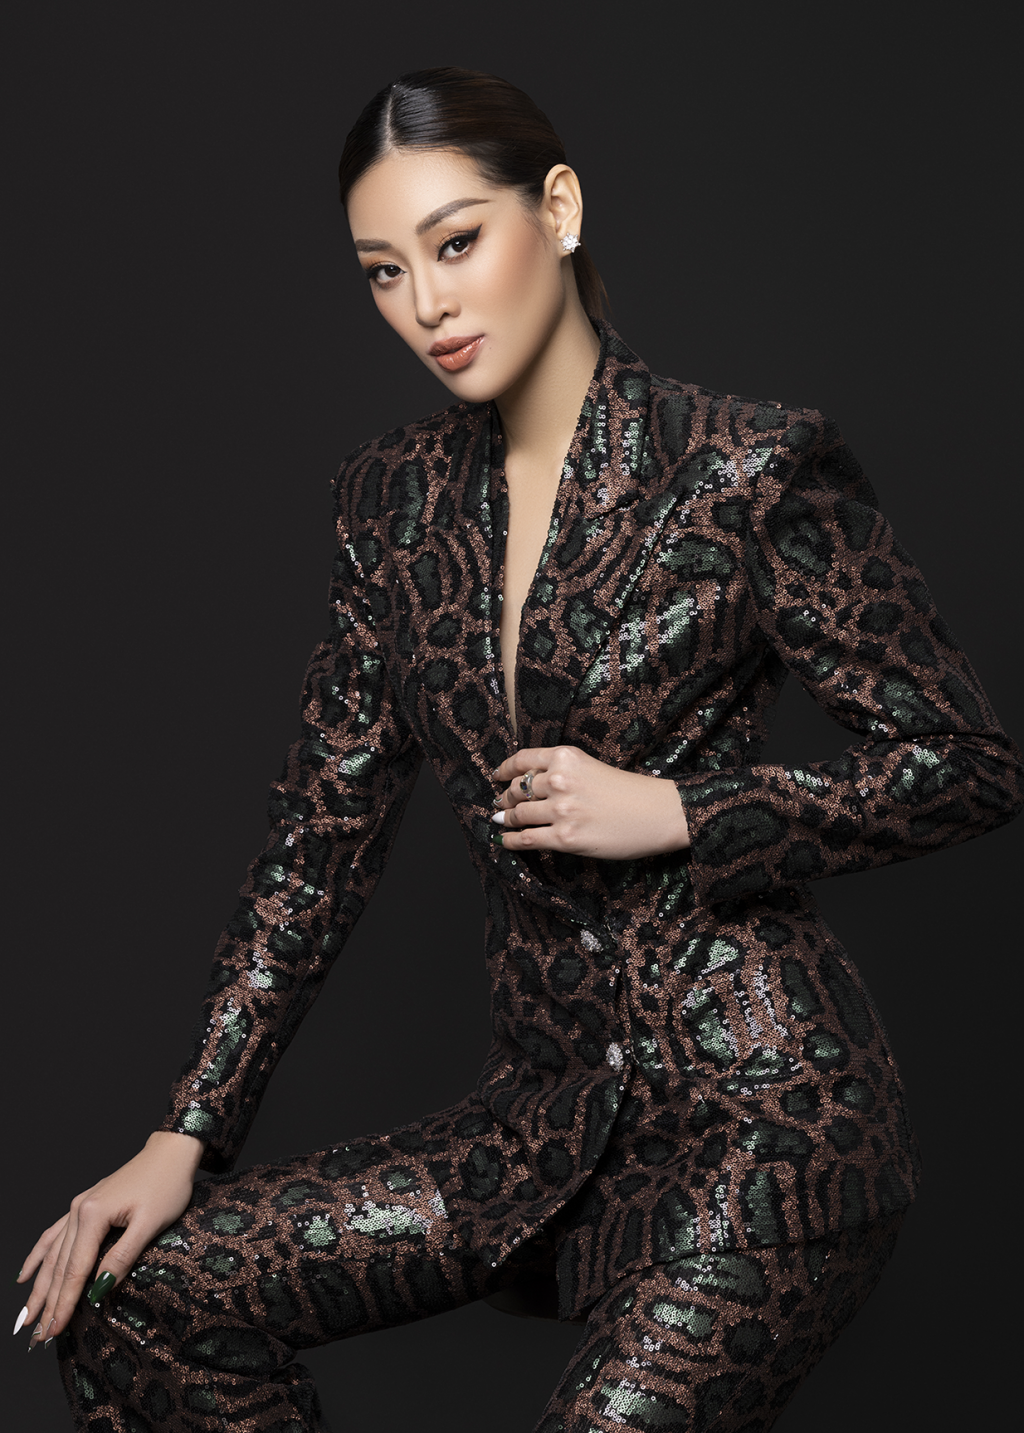 Hoa hậu Khánh Vân đào tạo người mẫu chinh phục các cuộc thi sắc đẹp